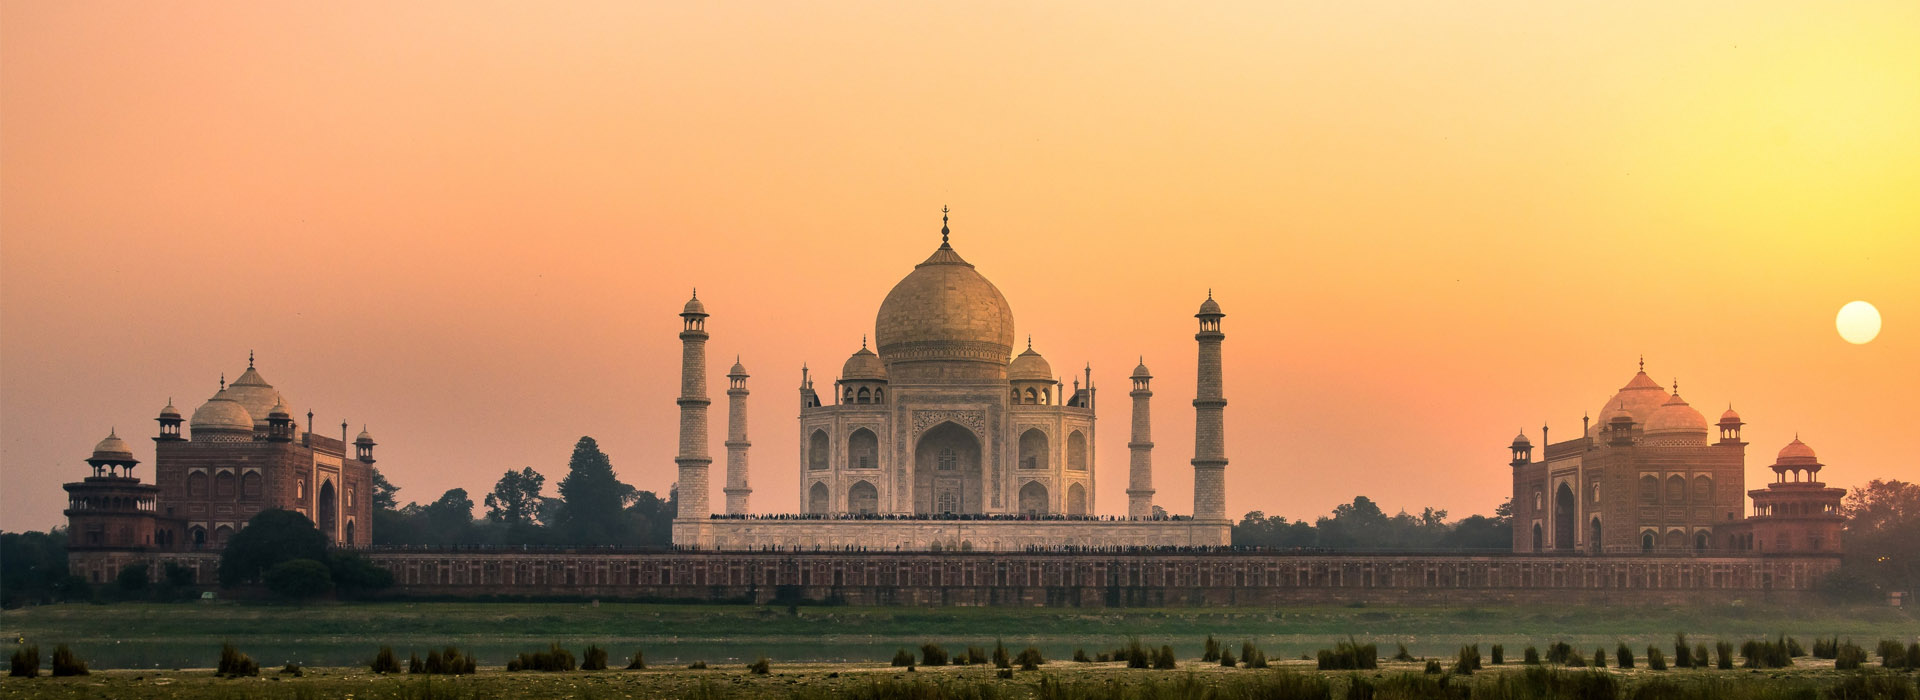 Taj Mahal Sunrise Tour by Car